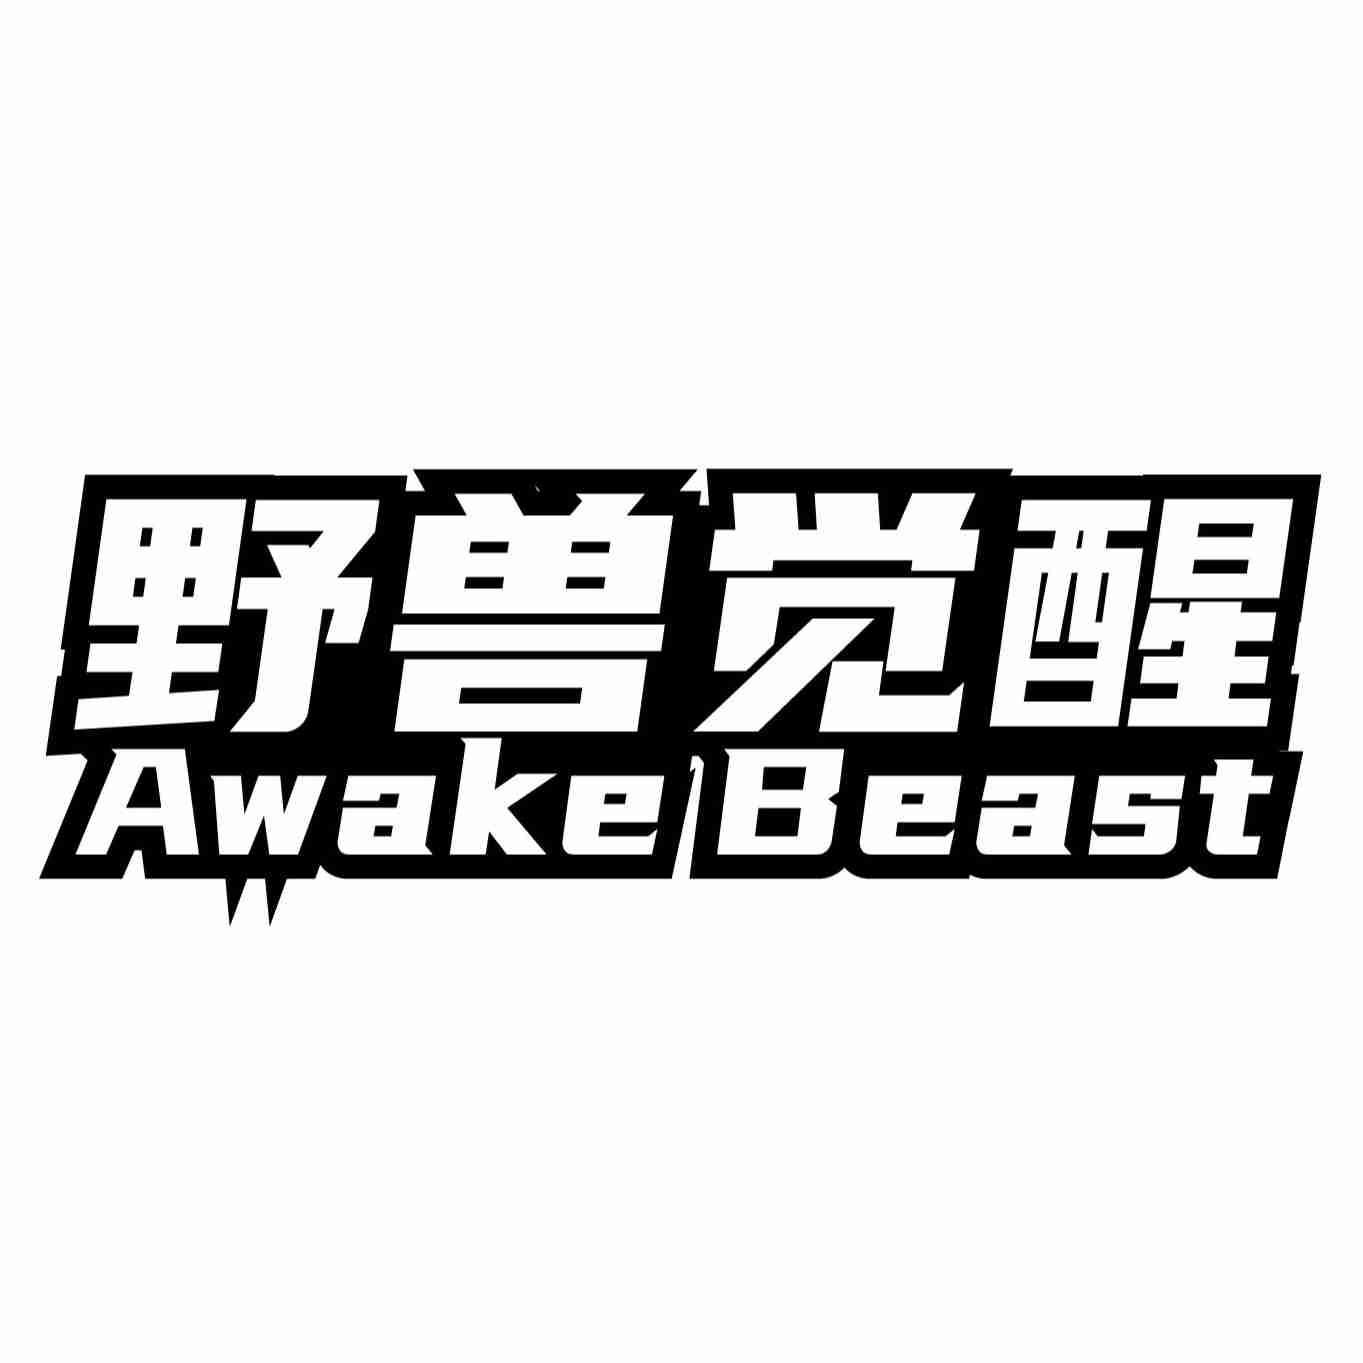 野兽觉醒 AWAKE BEAST